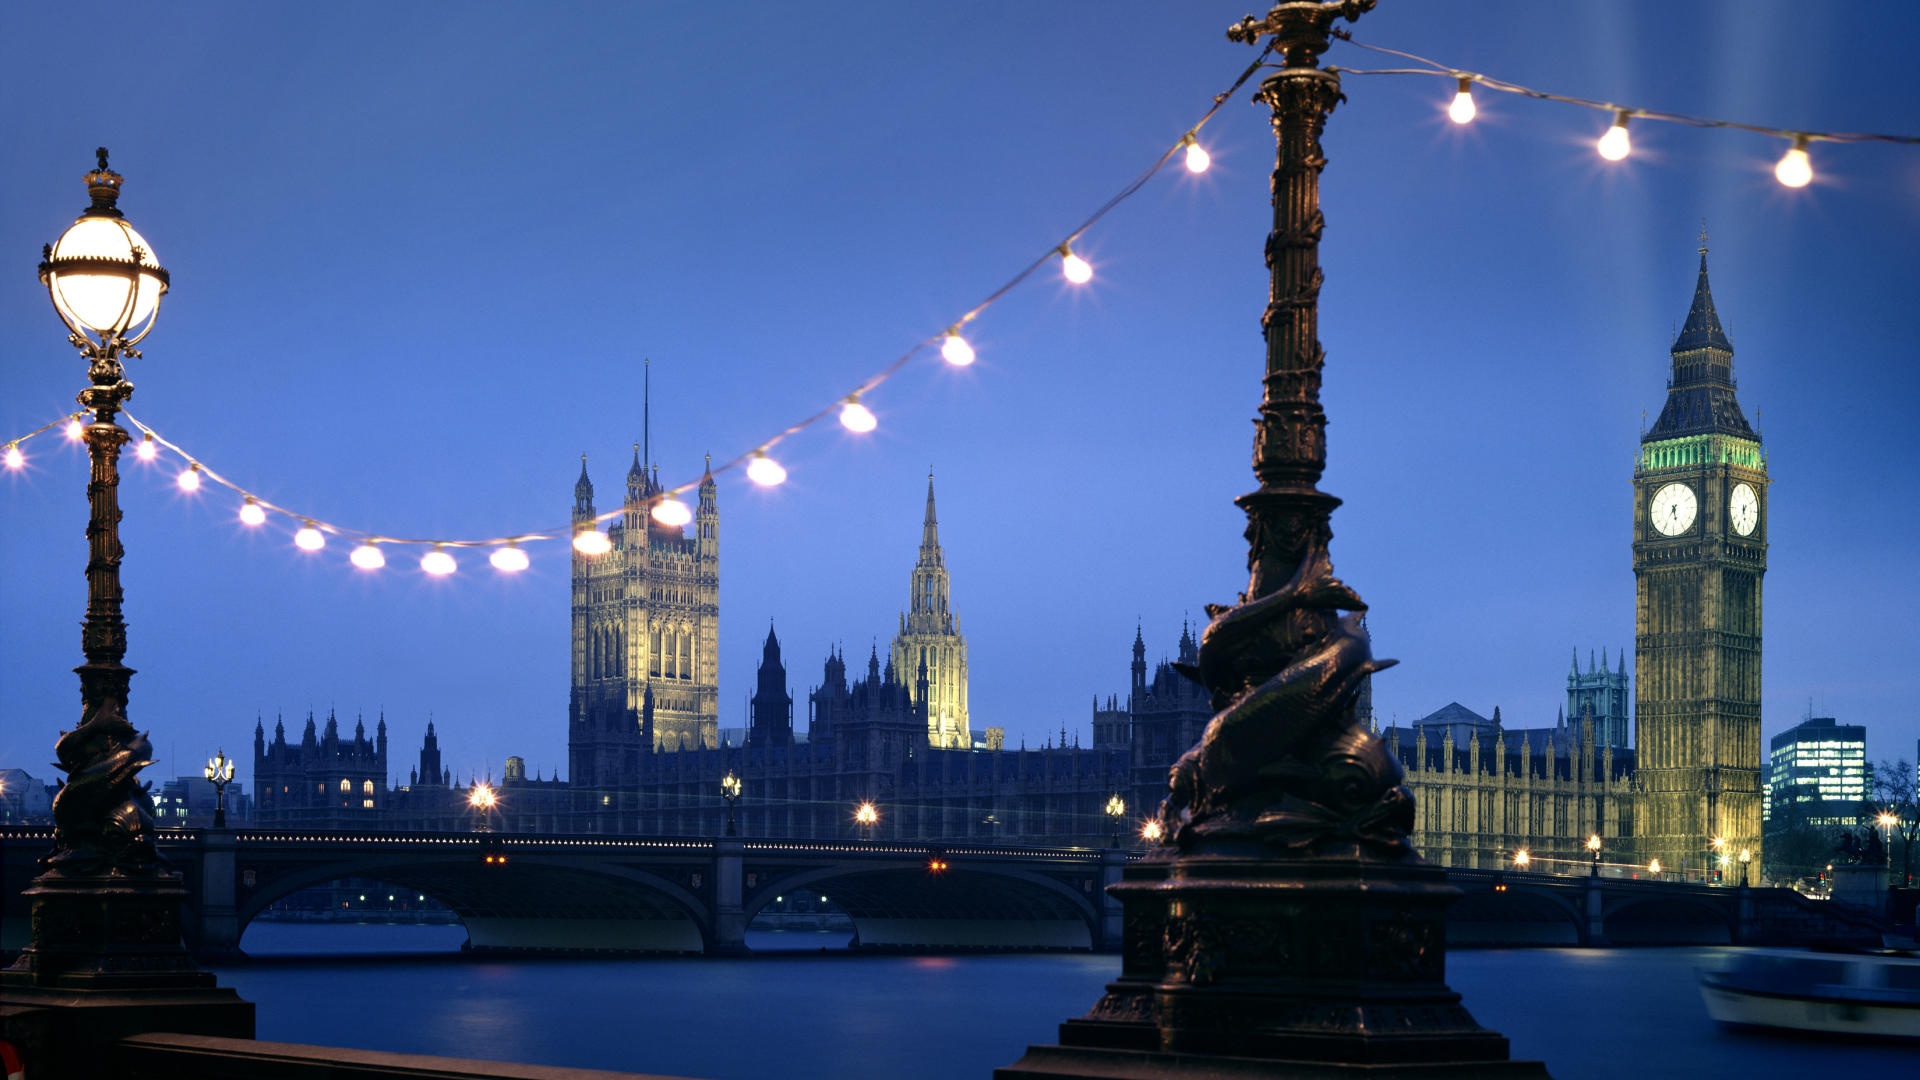 런던 이미지 배경,수도권,시티,첨탑,도시 풍경,하늘